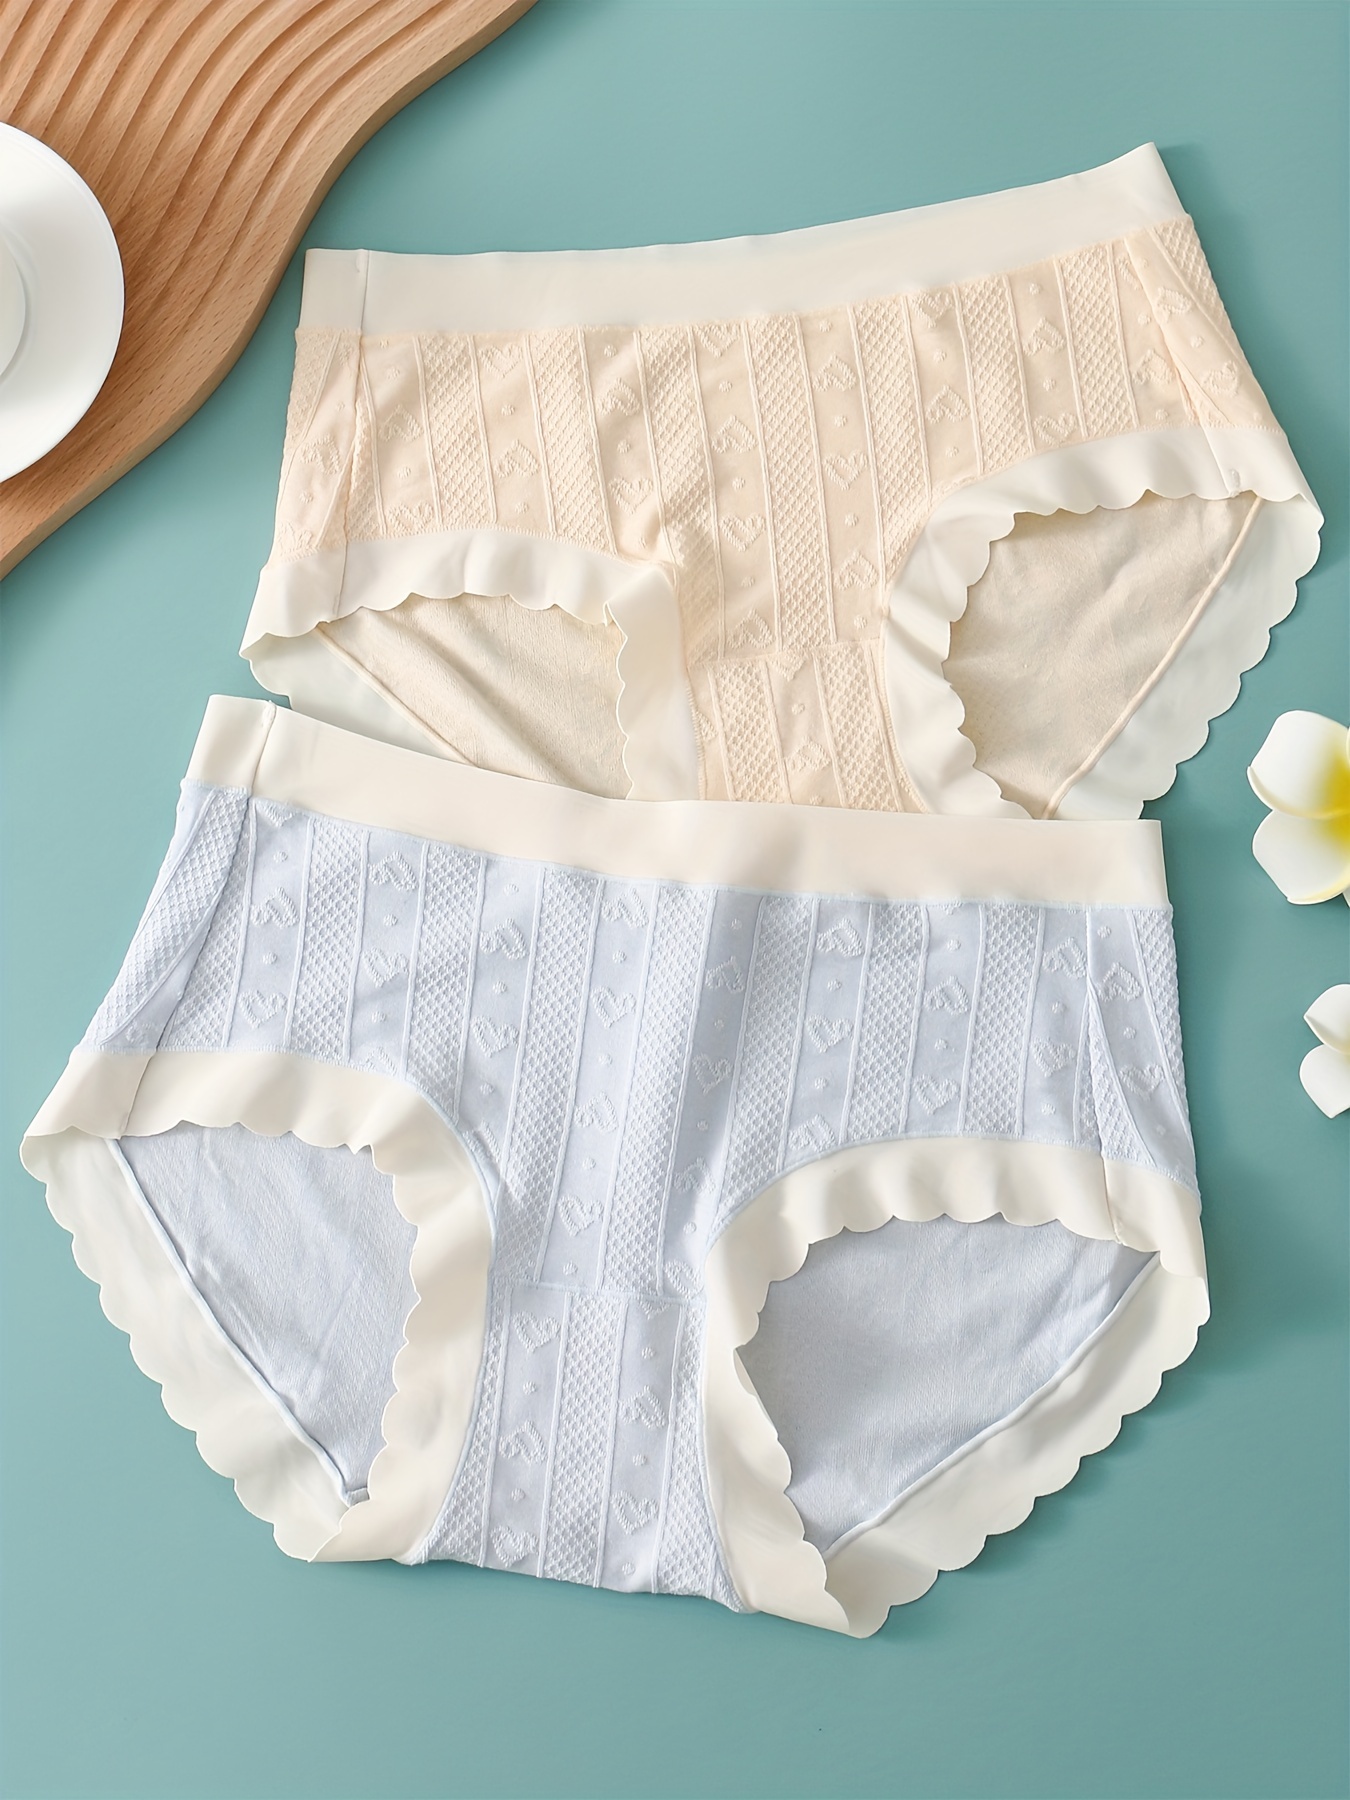 Teenage Girls' Underwear Japanese style Cute Panties - Temu Austria